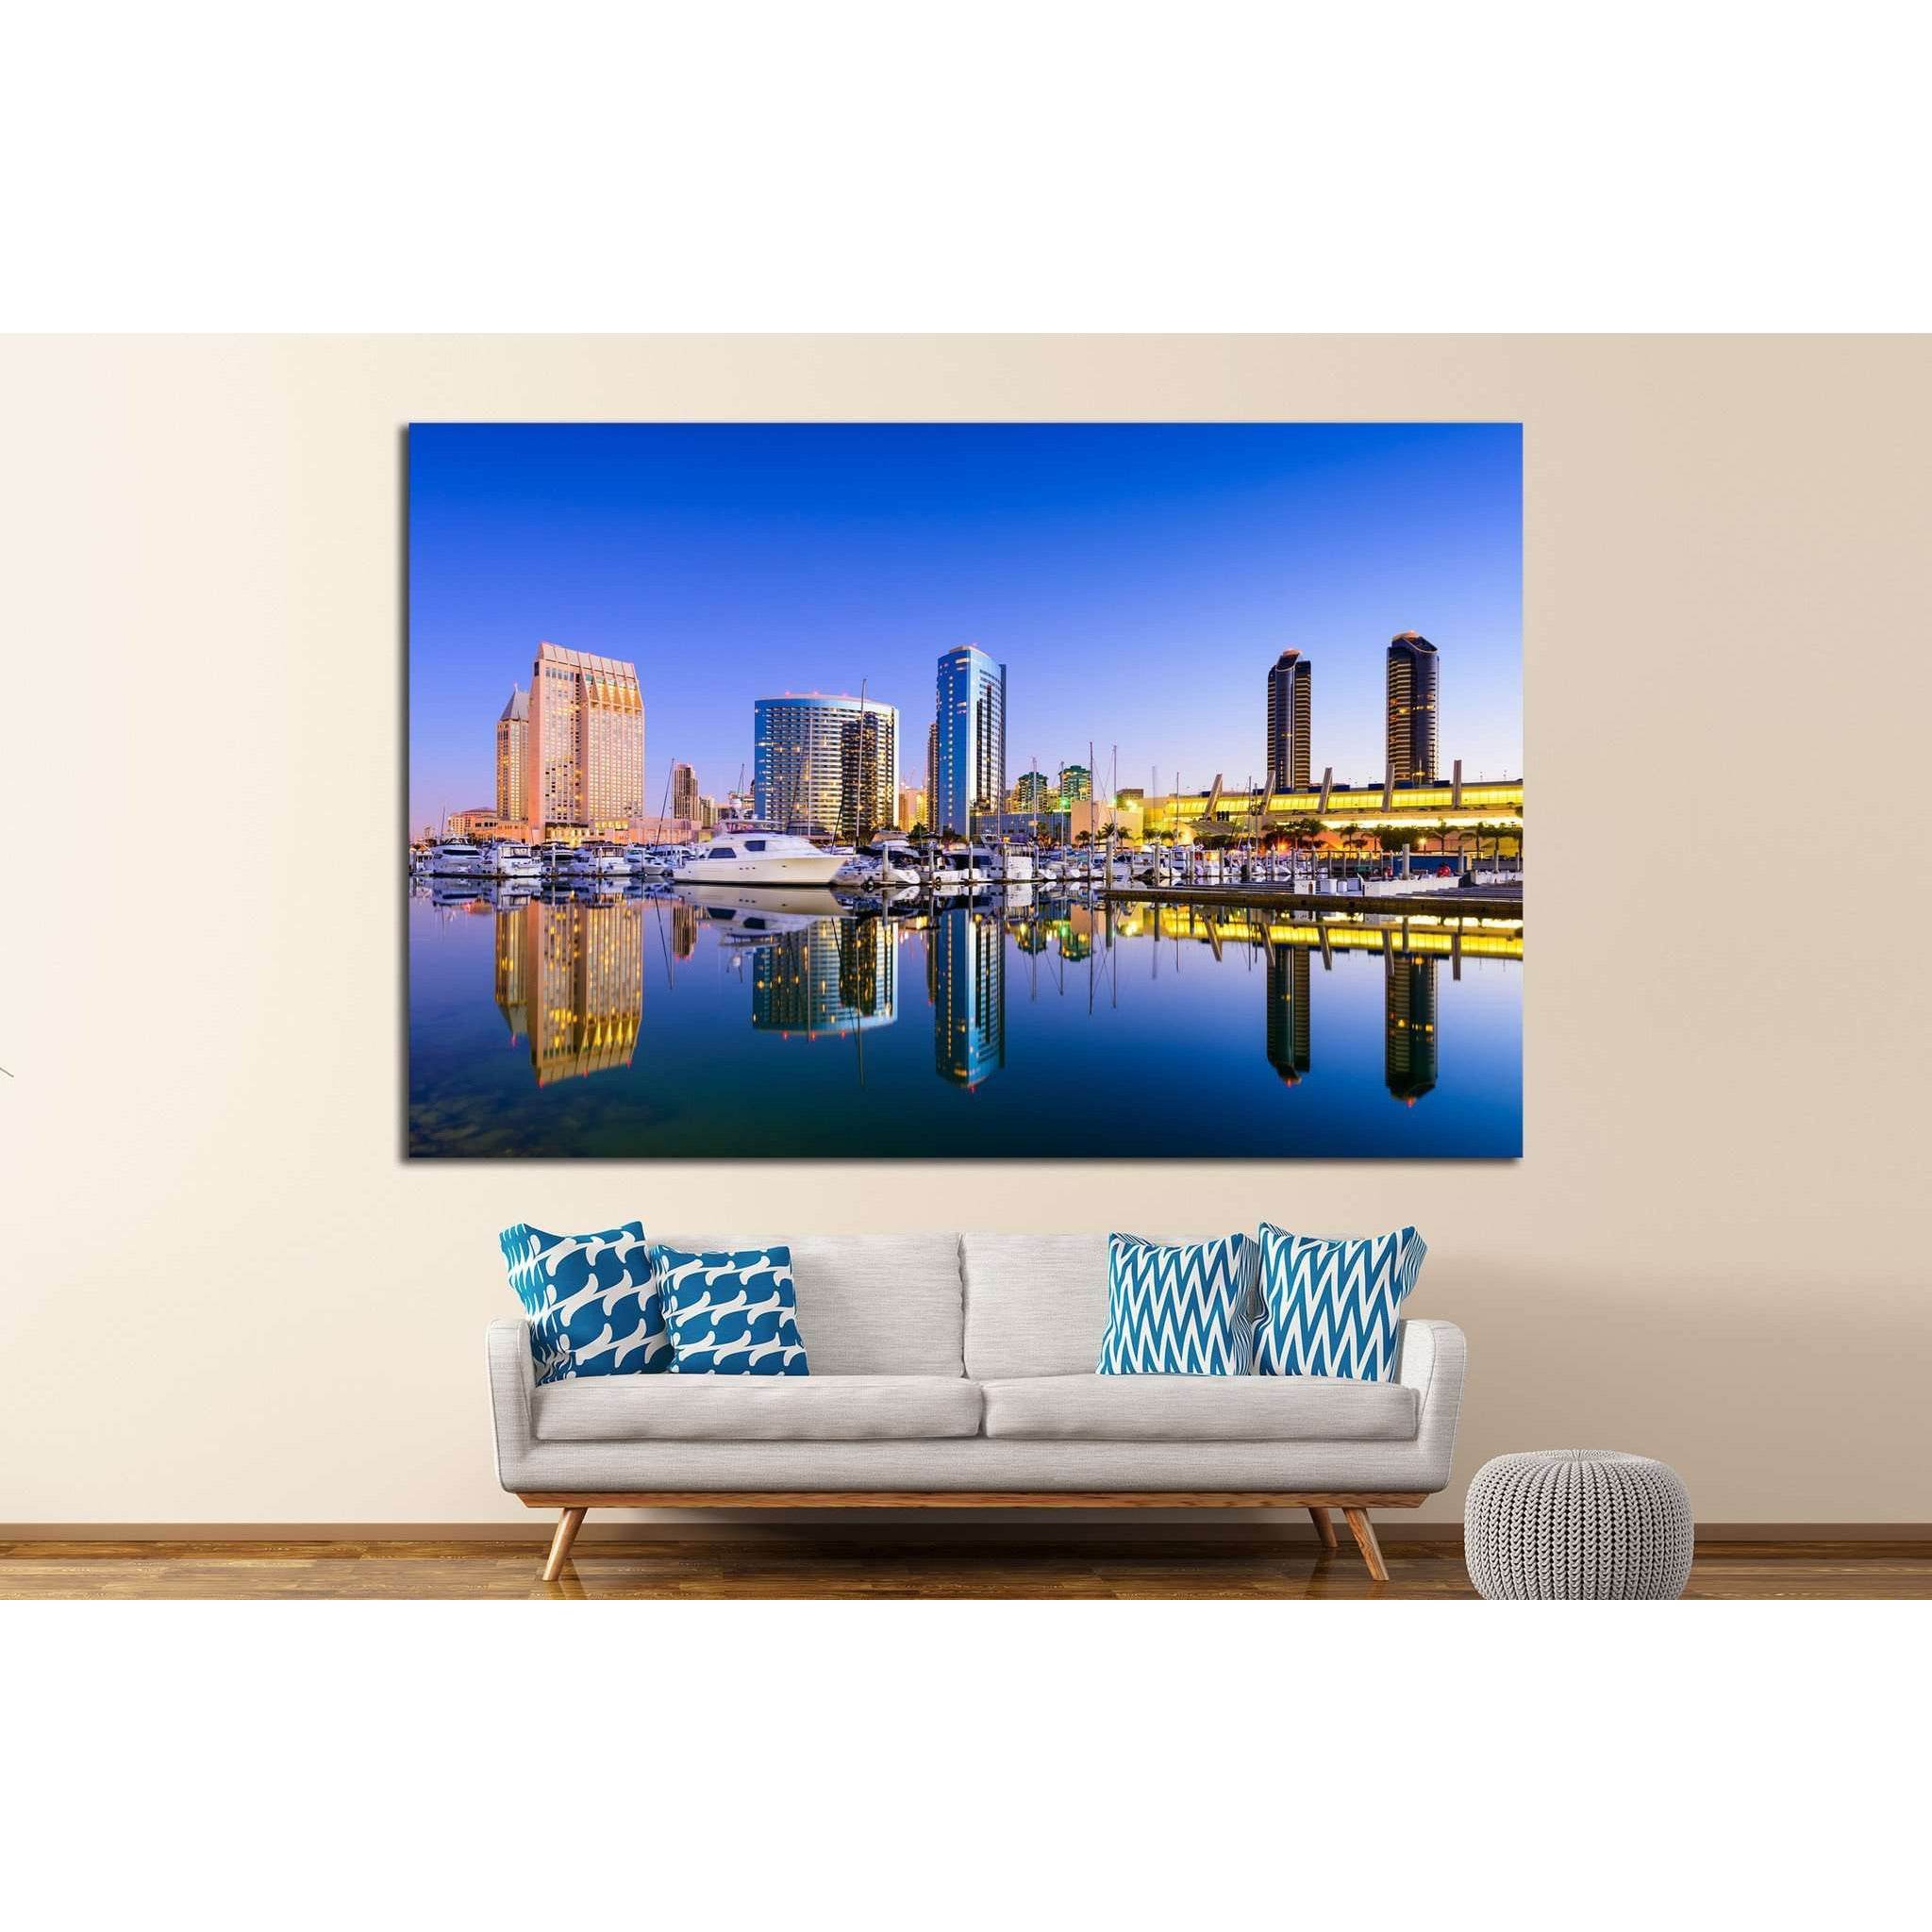 San Diego, California, USA, Embarcadero Marina №1217 Ready to Hang Canvas Print